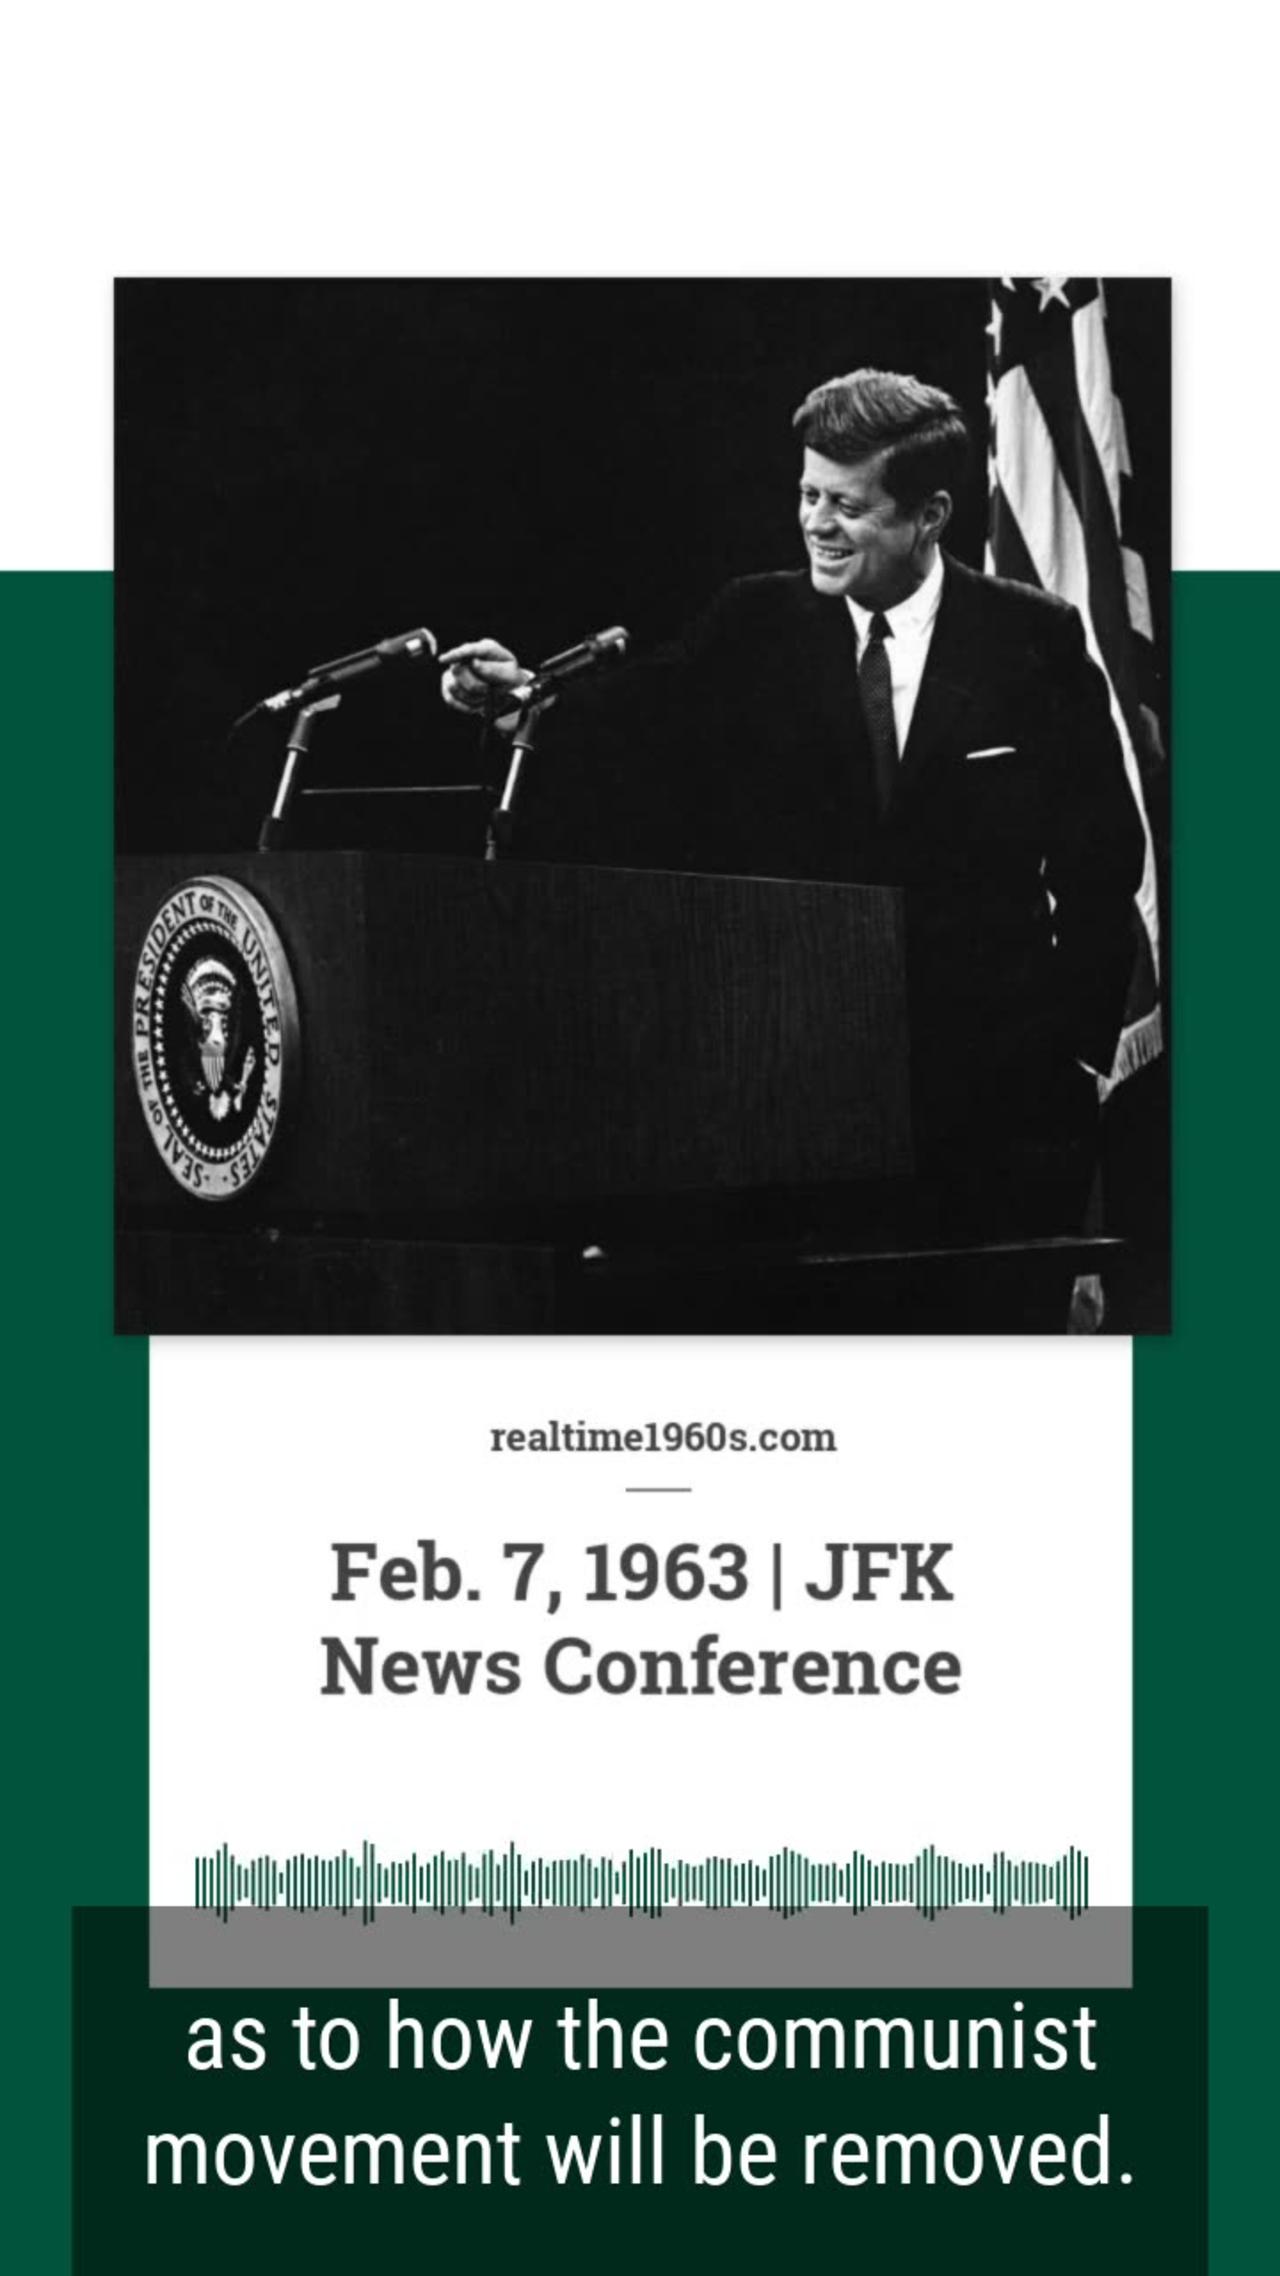 Feb. 7, 1963 - JFK Speaks on Communism in Cuba